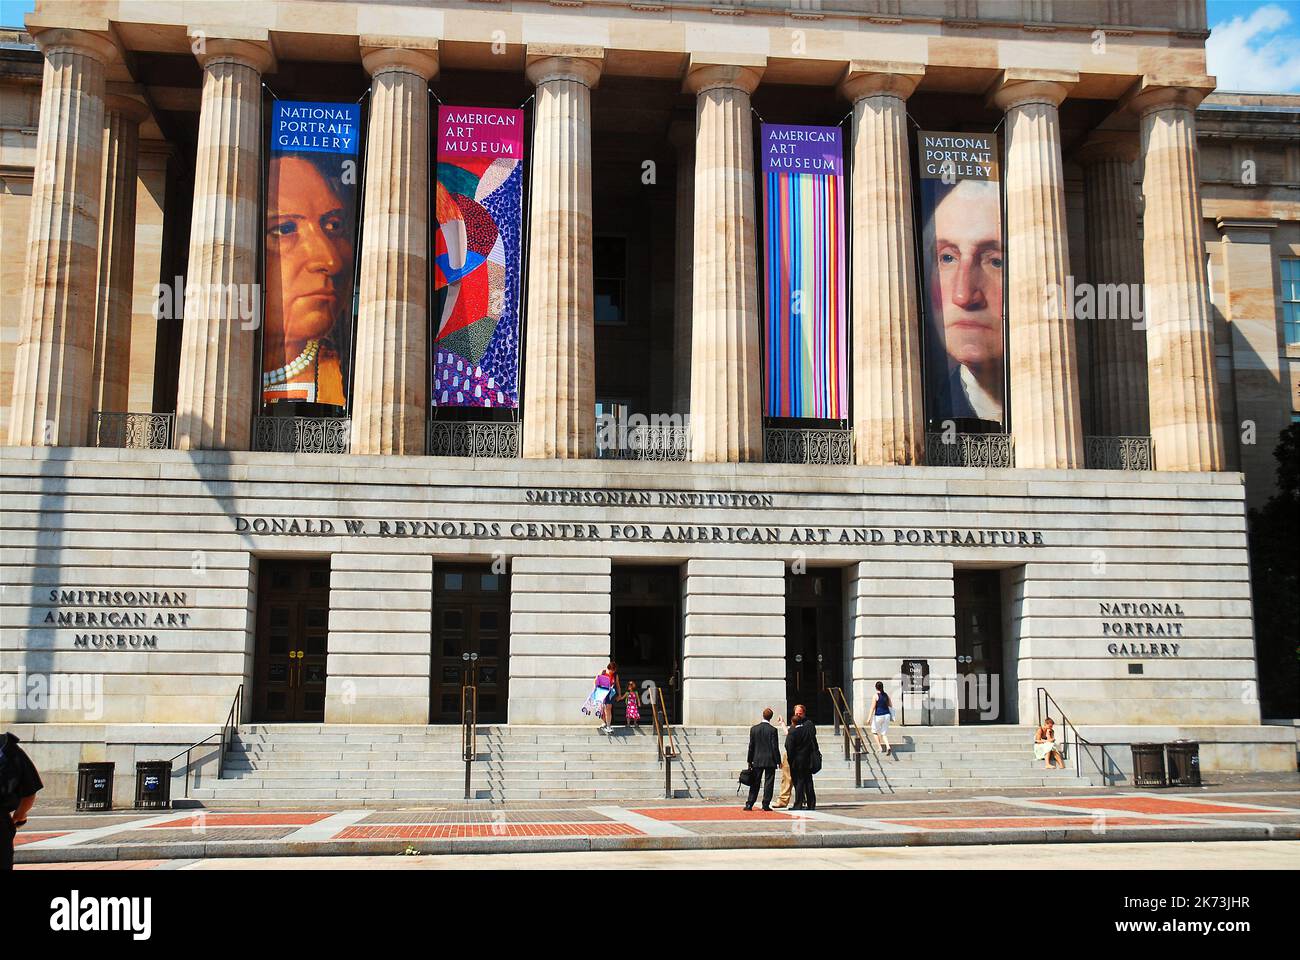 Pancartas en la Smithsonian National Portrait Gallery en Washington DC, anunciando los eventos y celebraciones actuales en el museo de arte Foto de stock